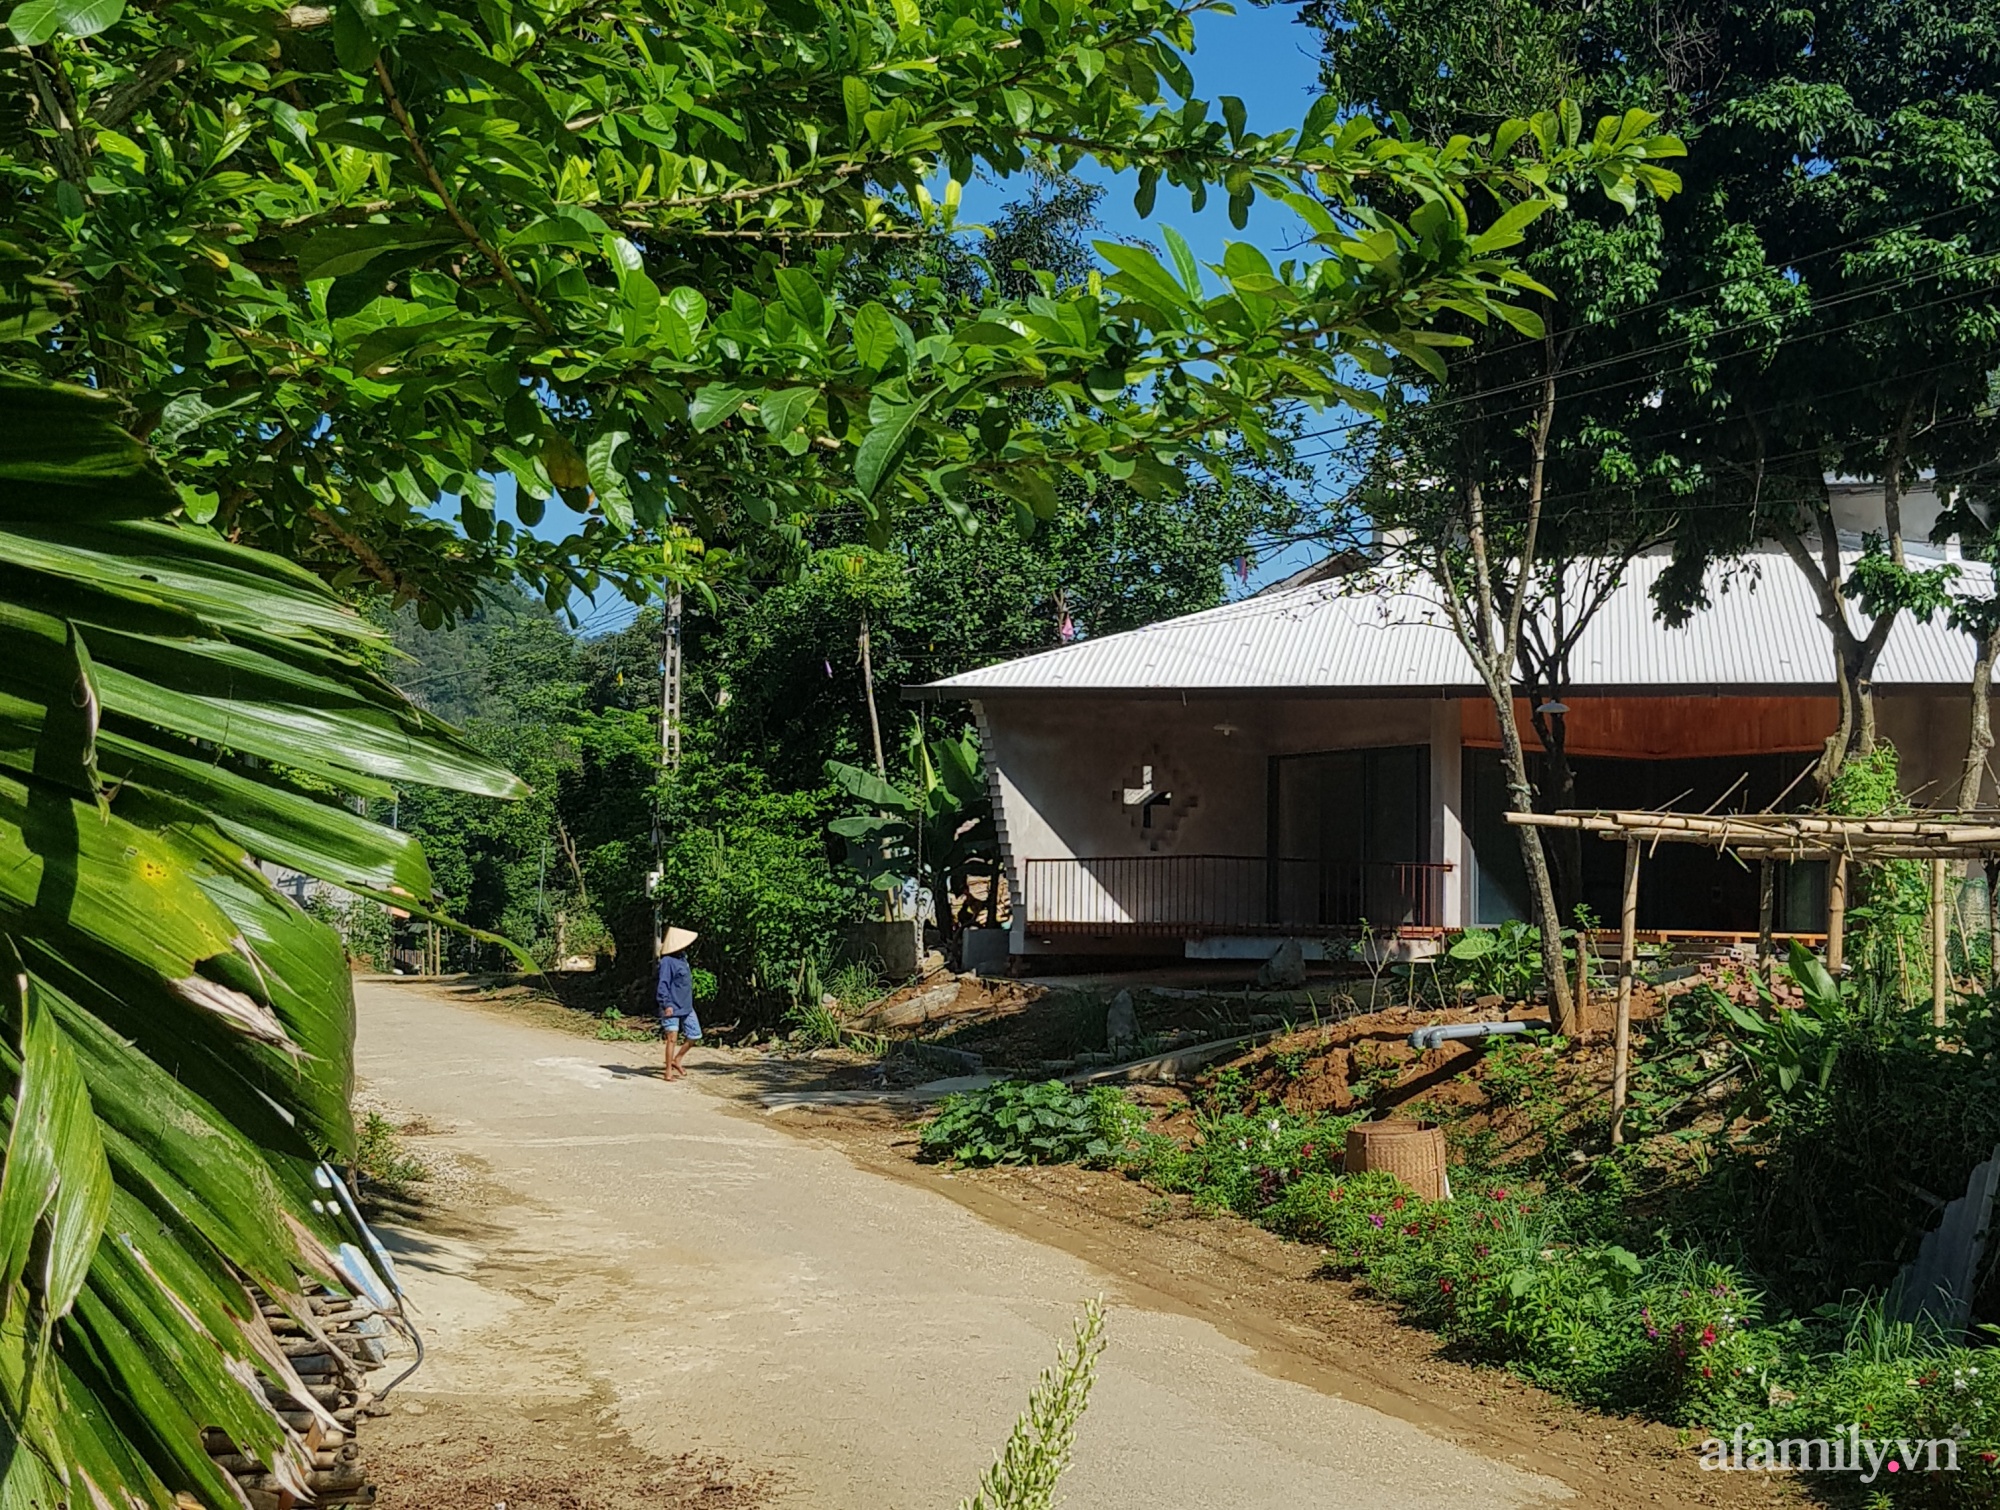 Ngôi nhà mát rượi dưới nắng gắt mùa hè nhờ thiết kế mái hai tầng và ống khói 3 mét ở Thanh Hóa - Ảnh 3.